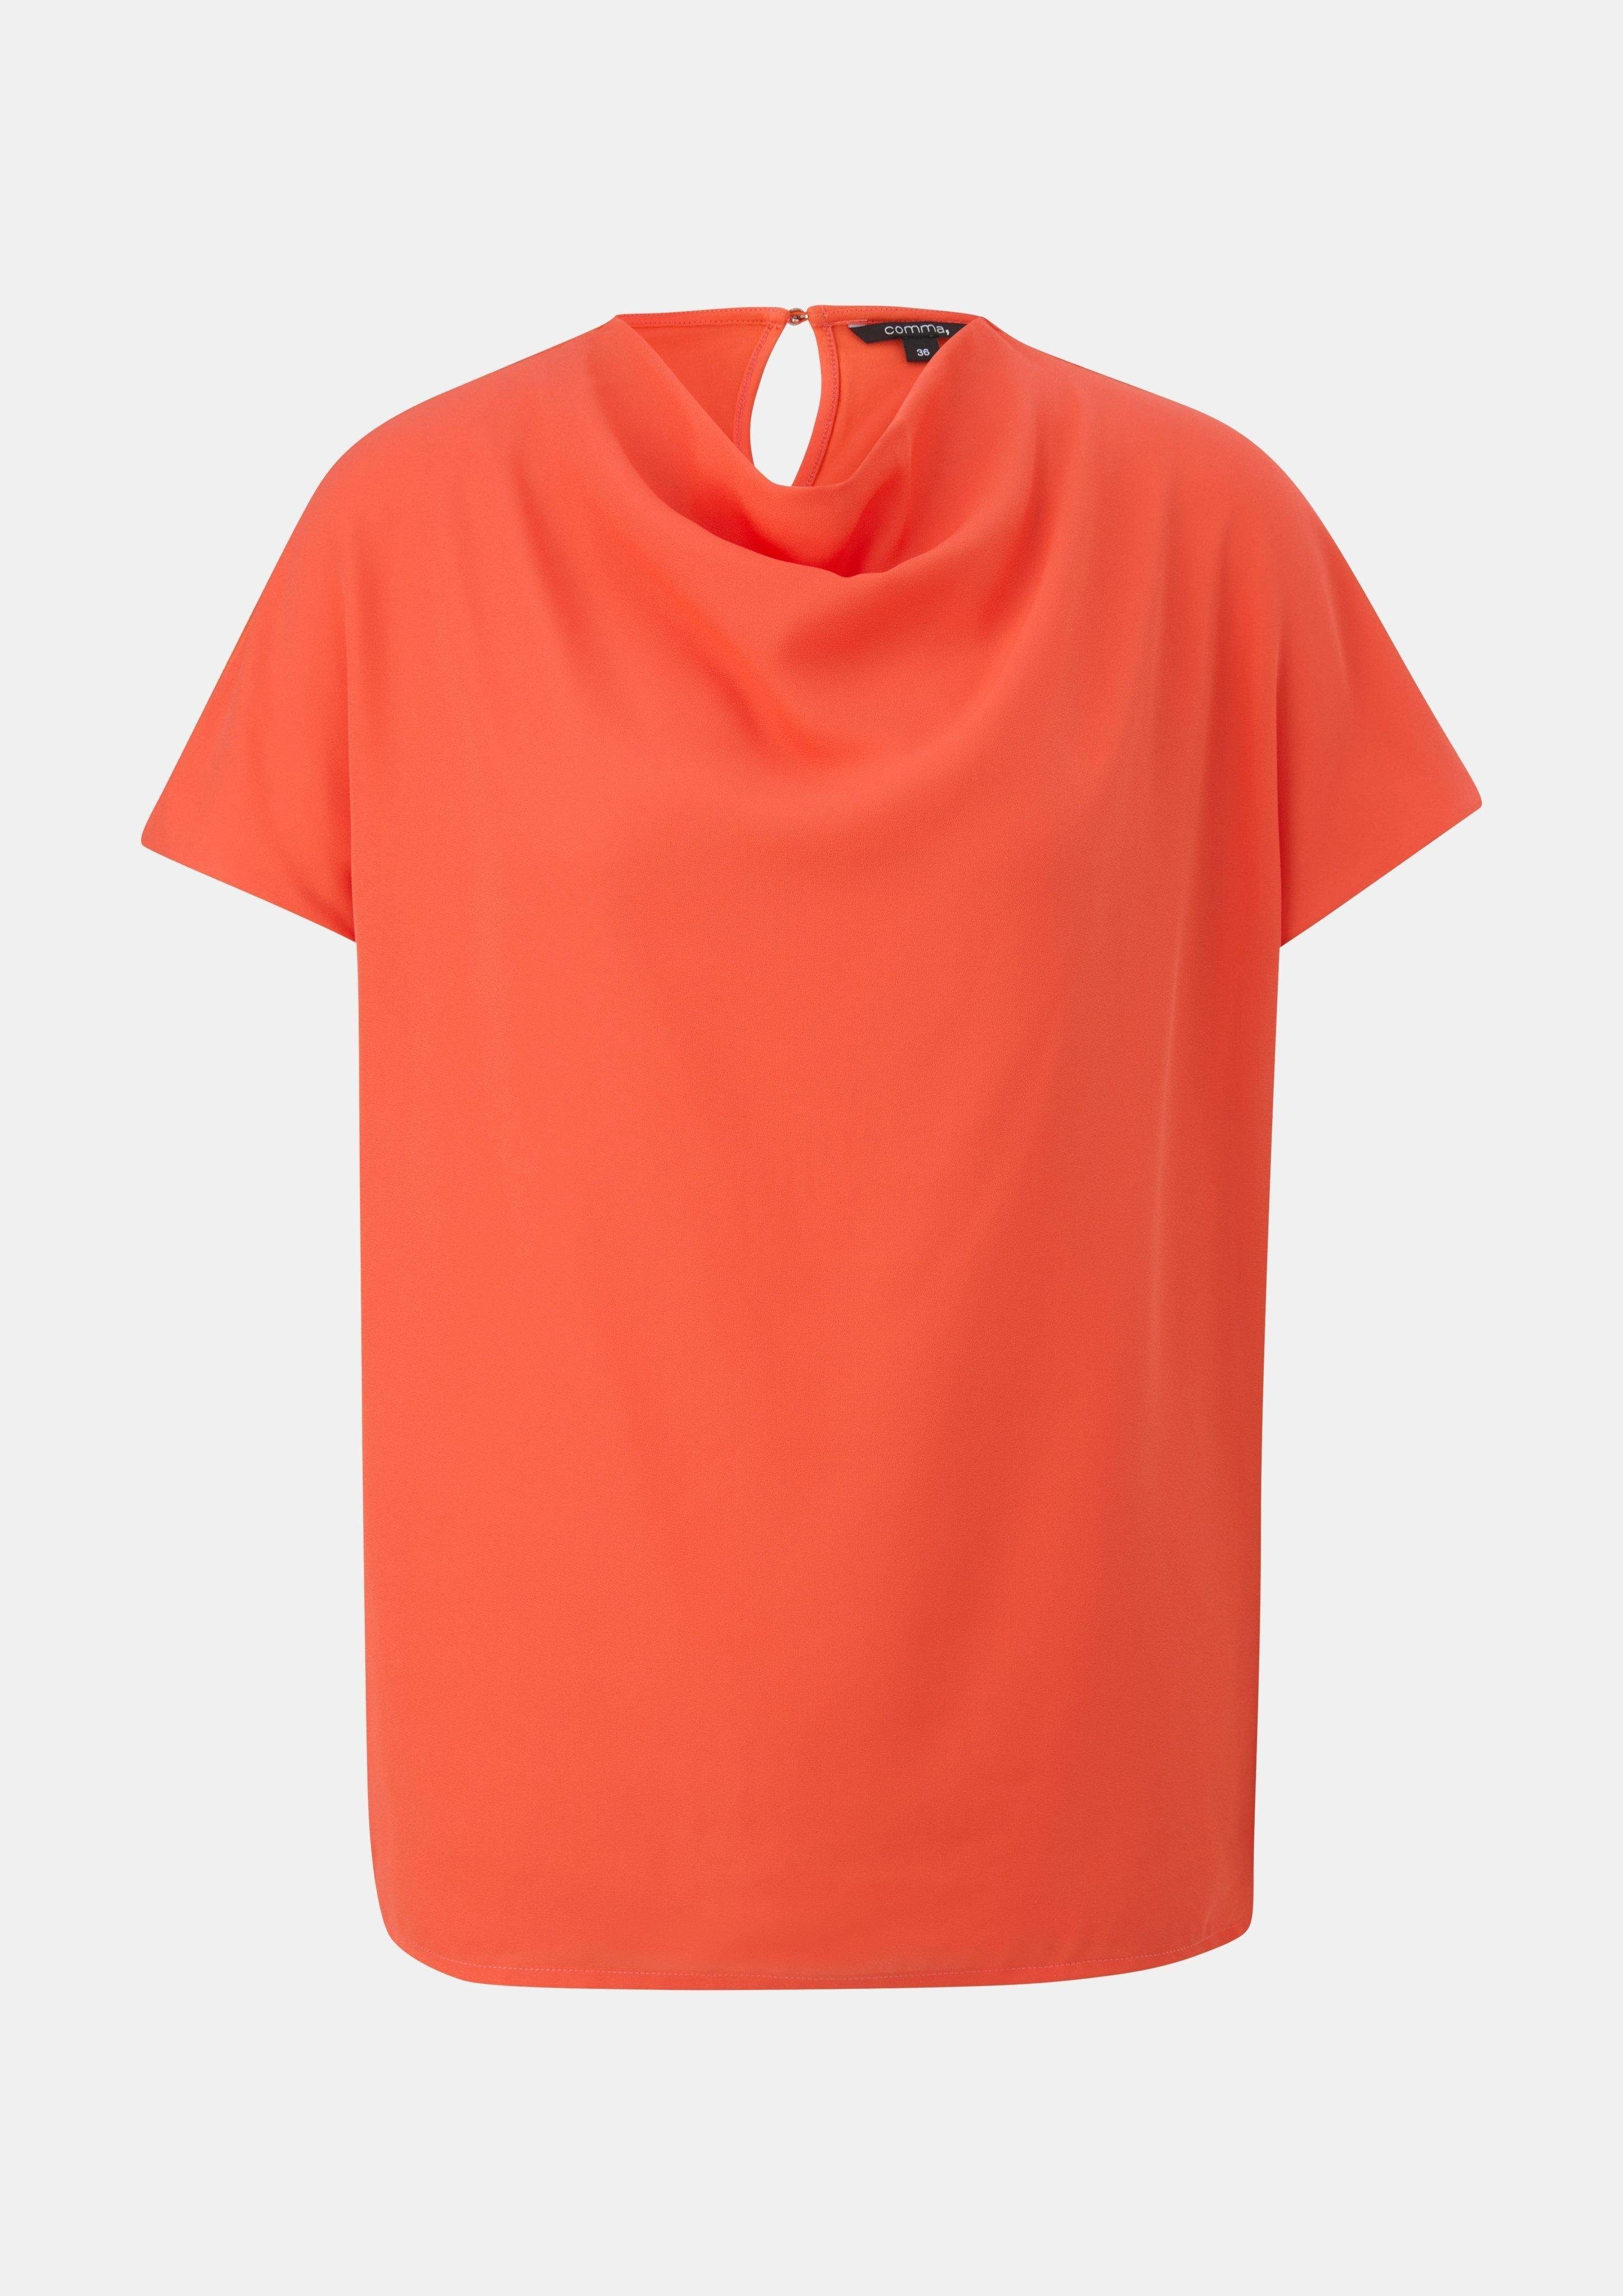 Kurzarmshirt im Comma Fabricmix orange Blusenshirt